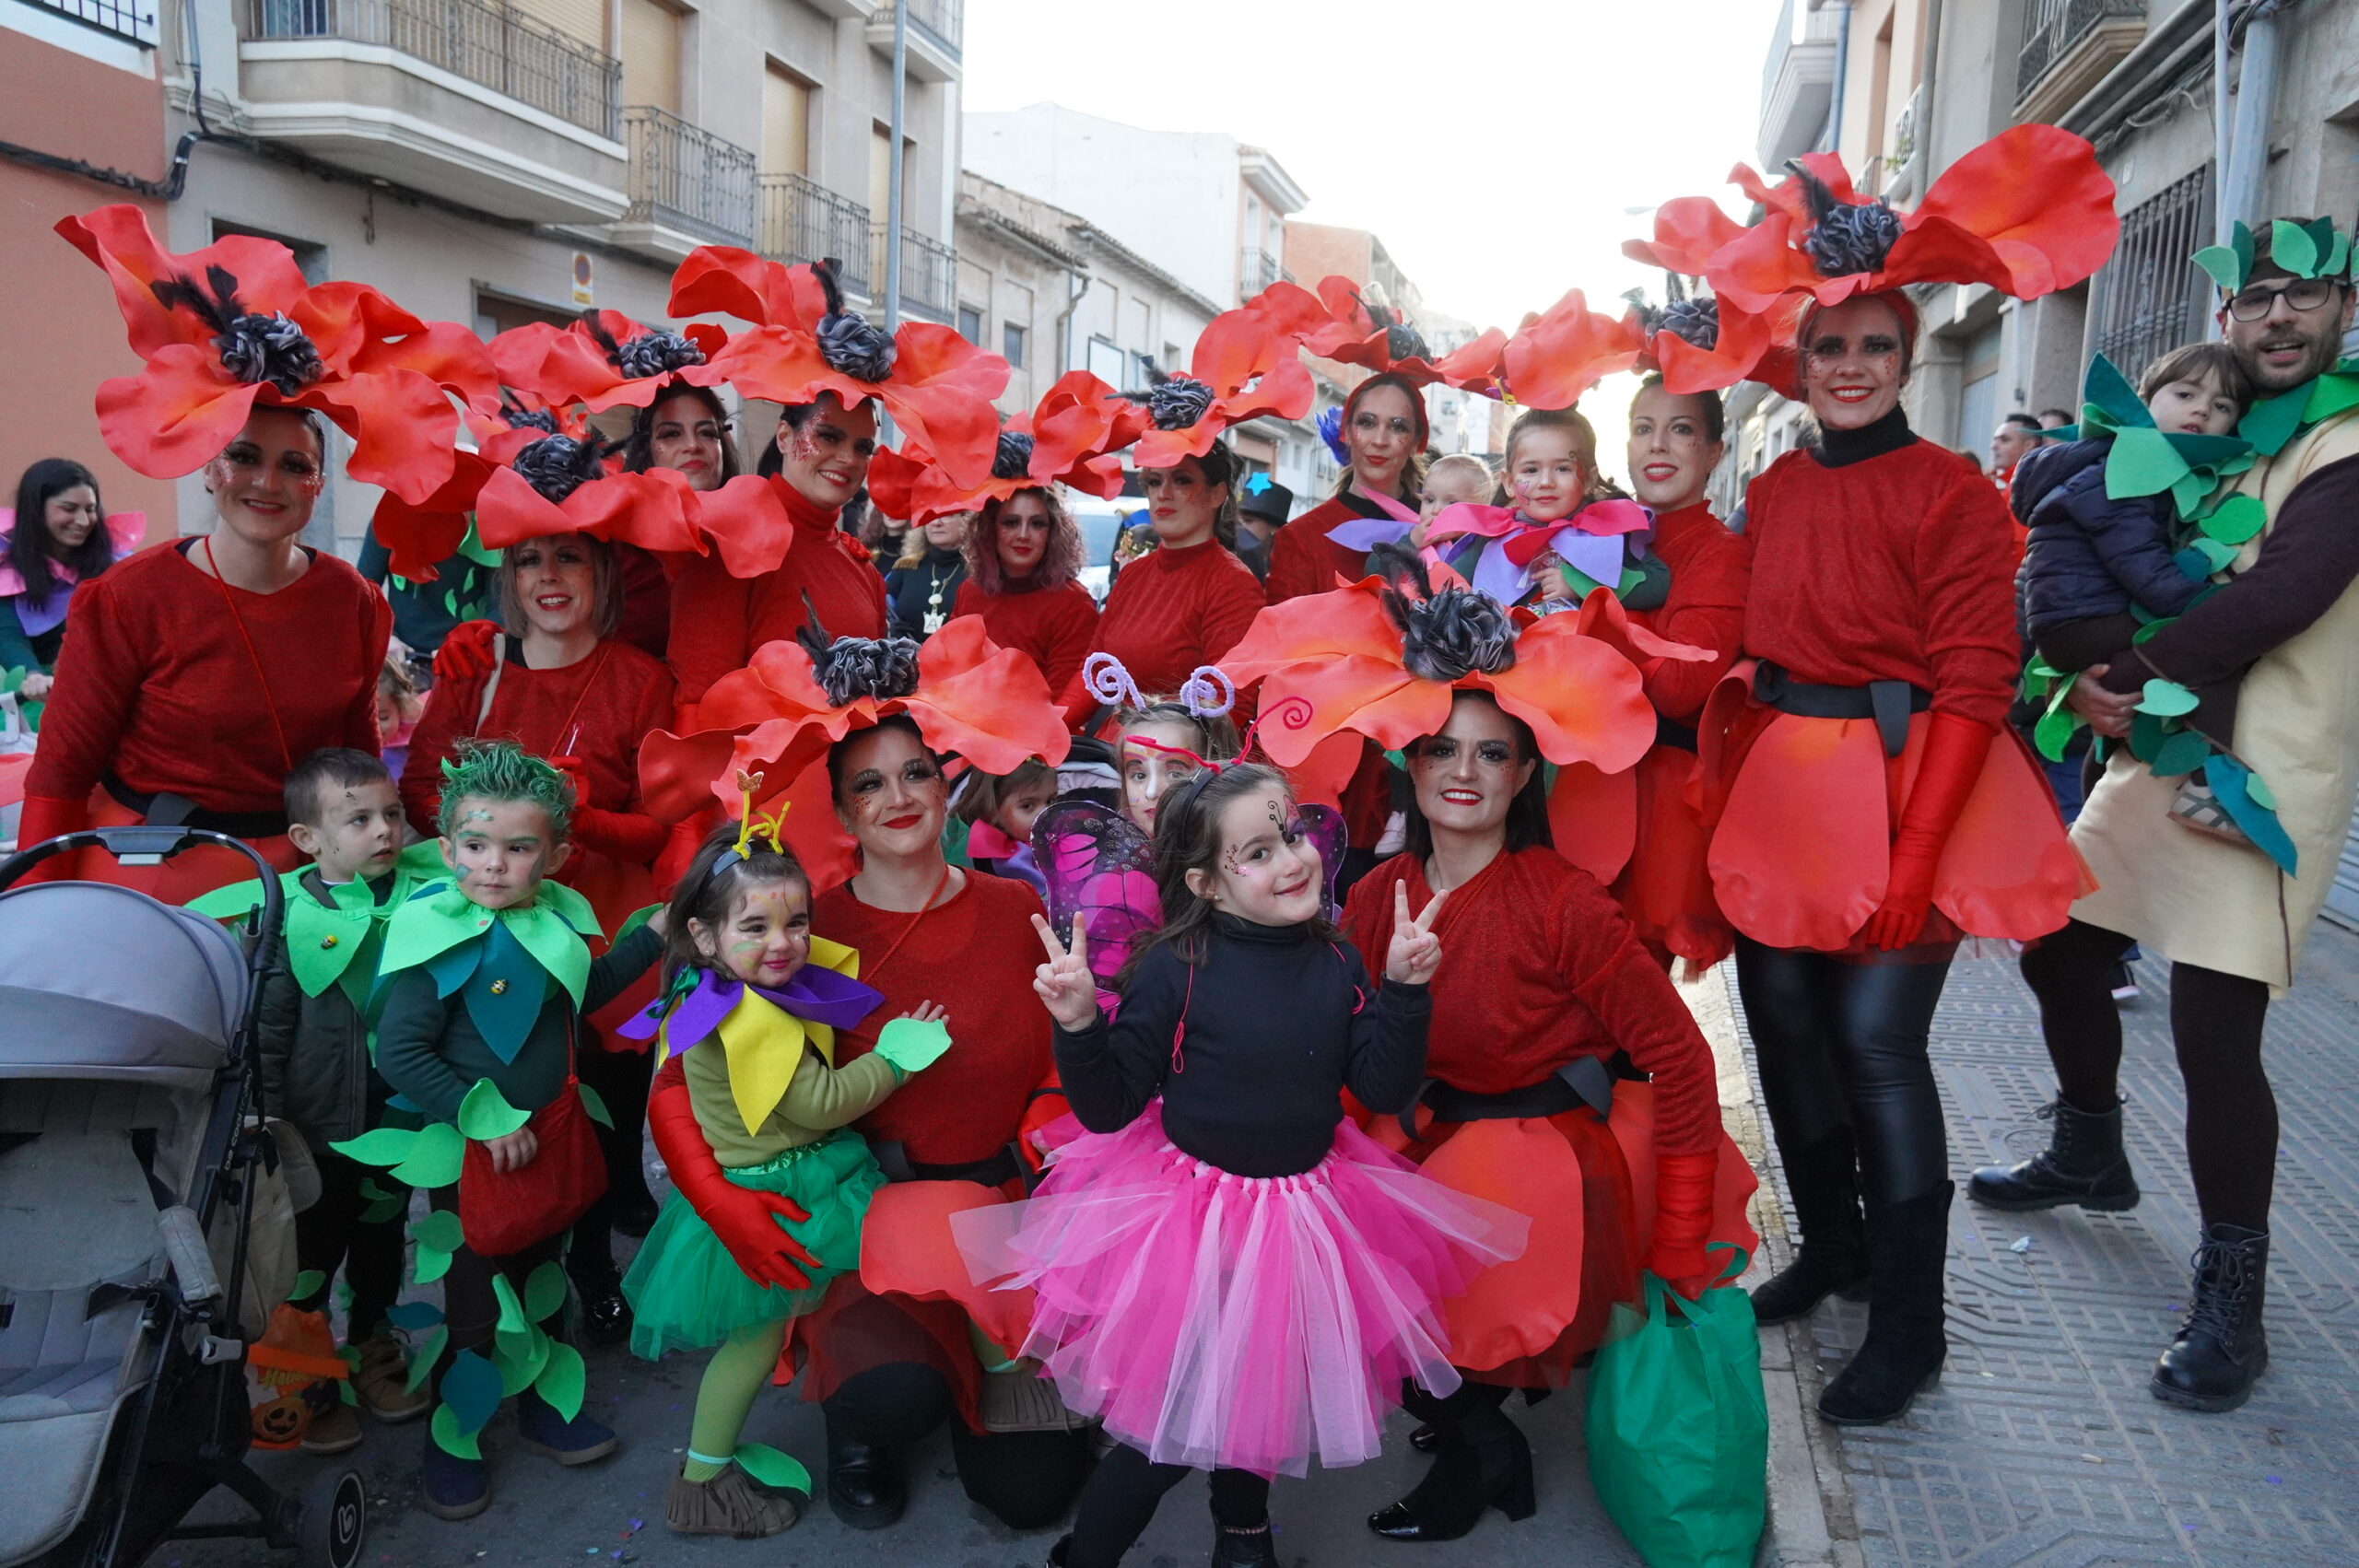 Festejos y el Grupo Siete Días ponen el marcha el I Photocall de Carnaval -  Siete Días Jumilla